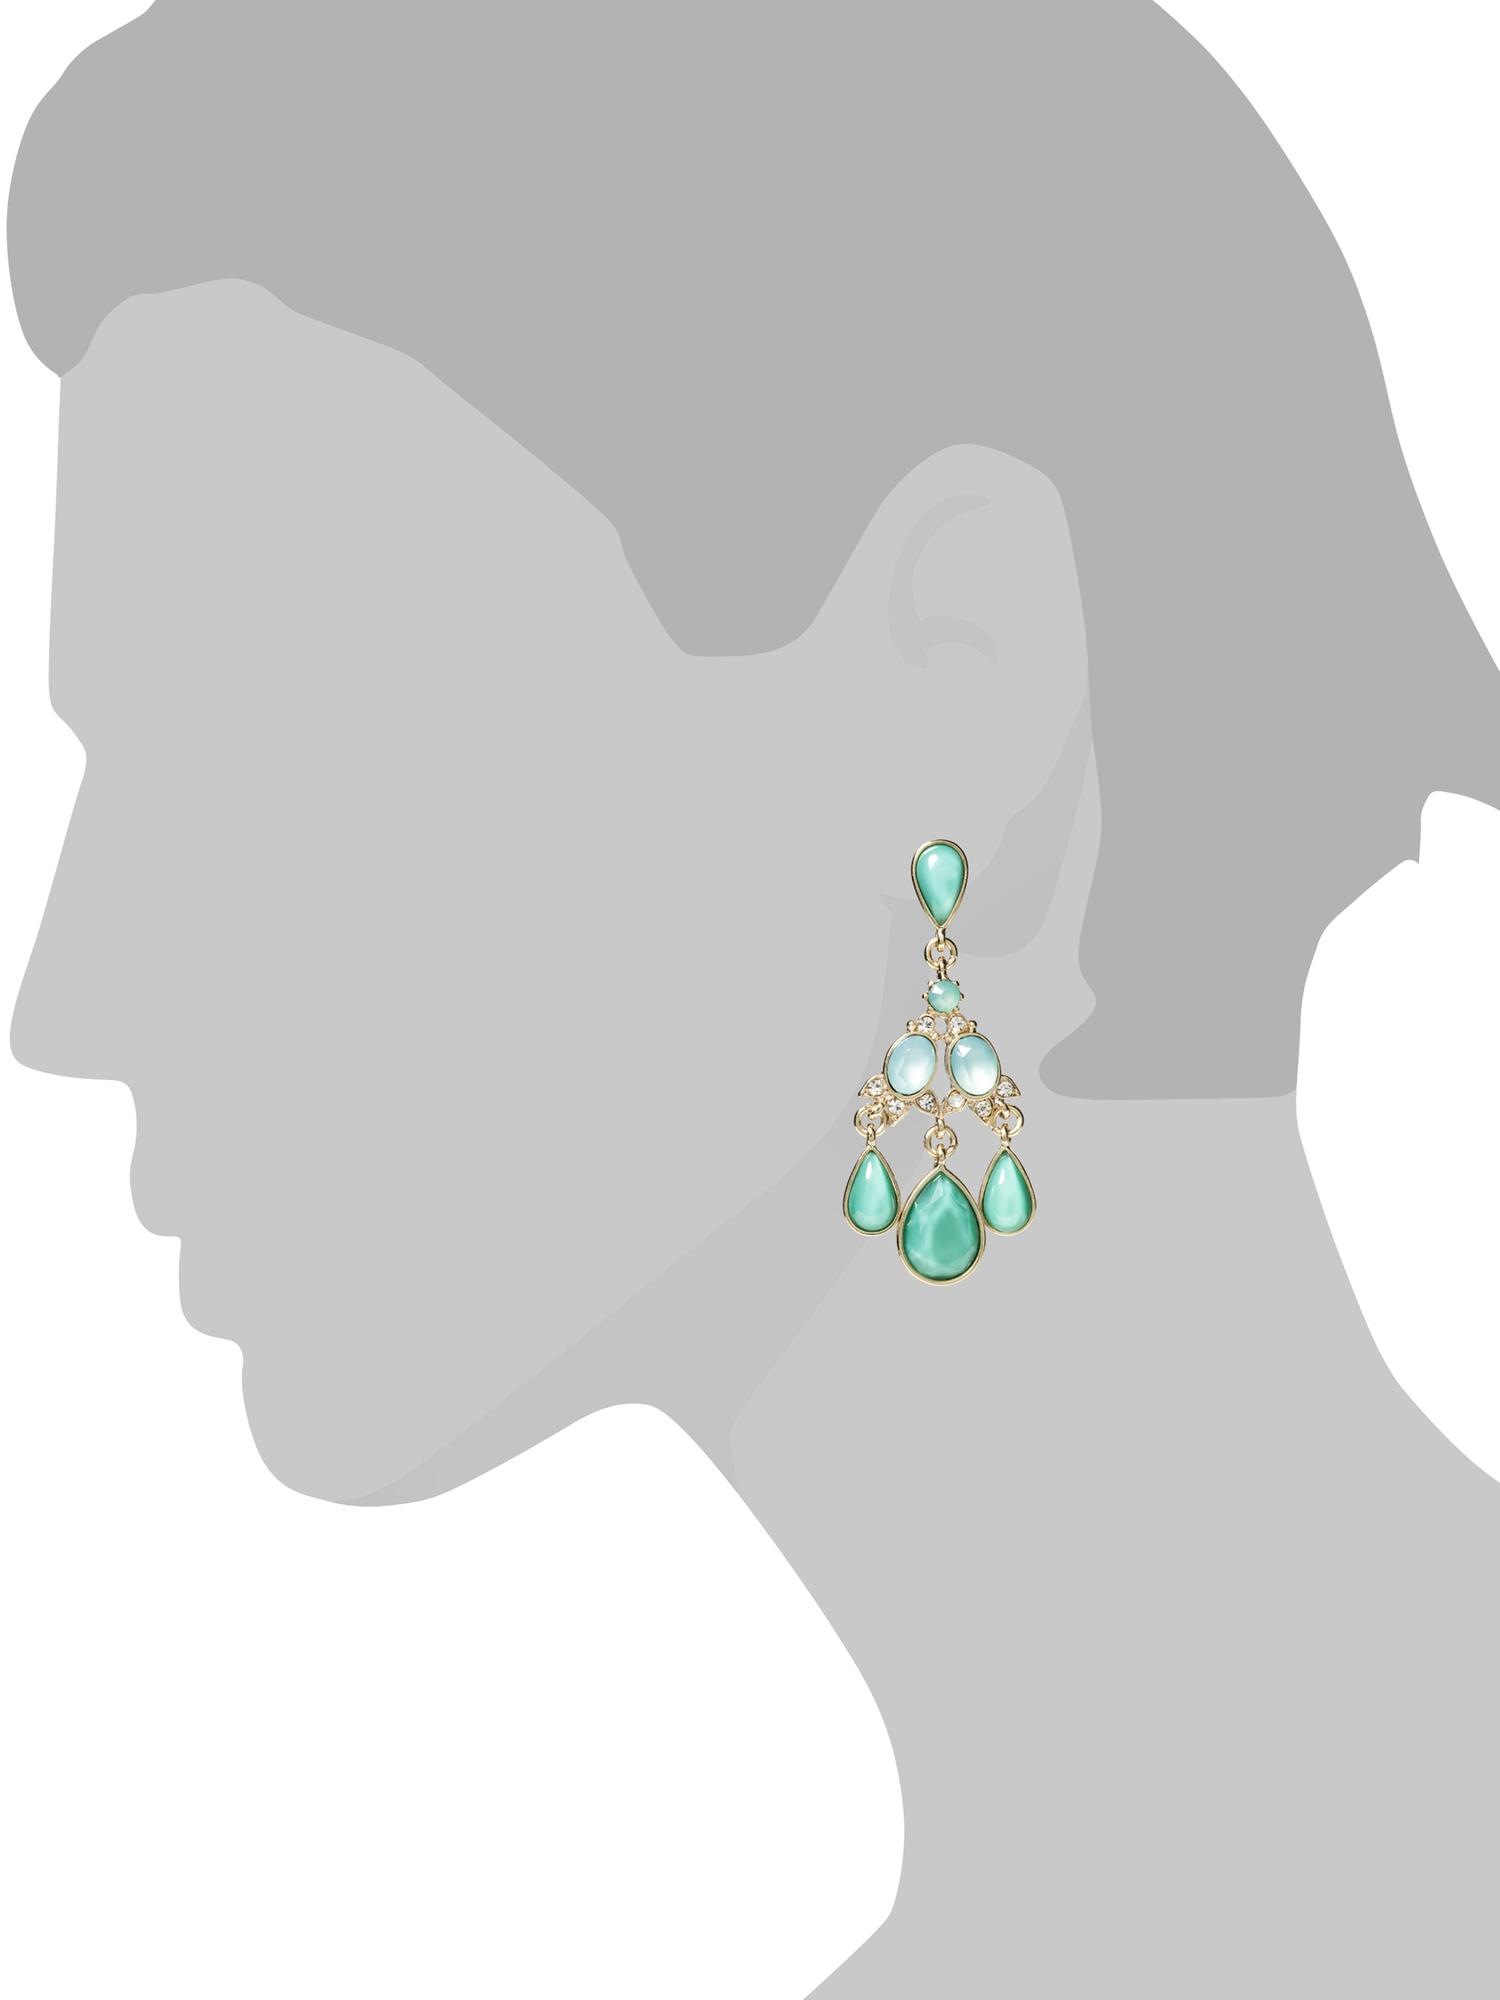 Sweet chandelier earring